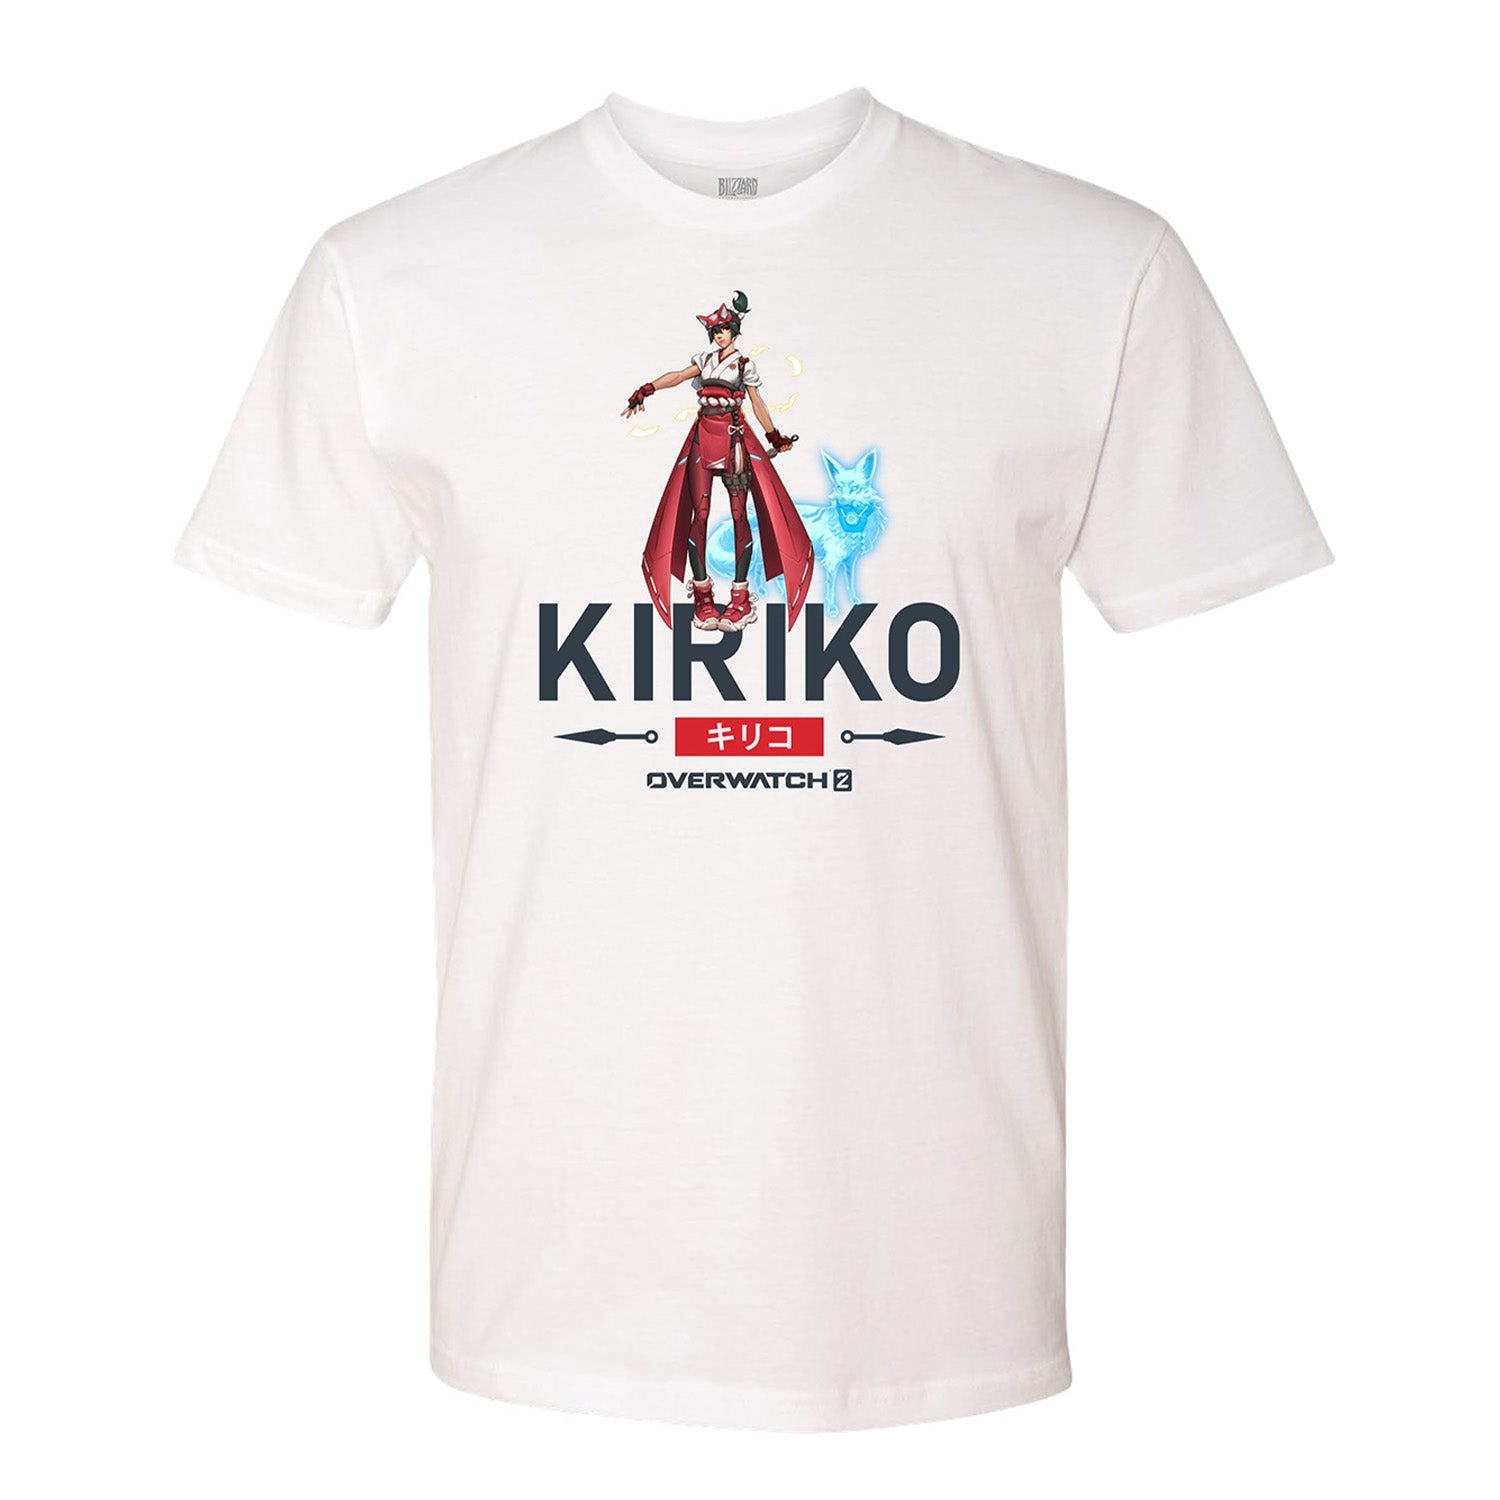 Overwatch 2 Kiriko White T-Shirt - Front View